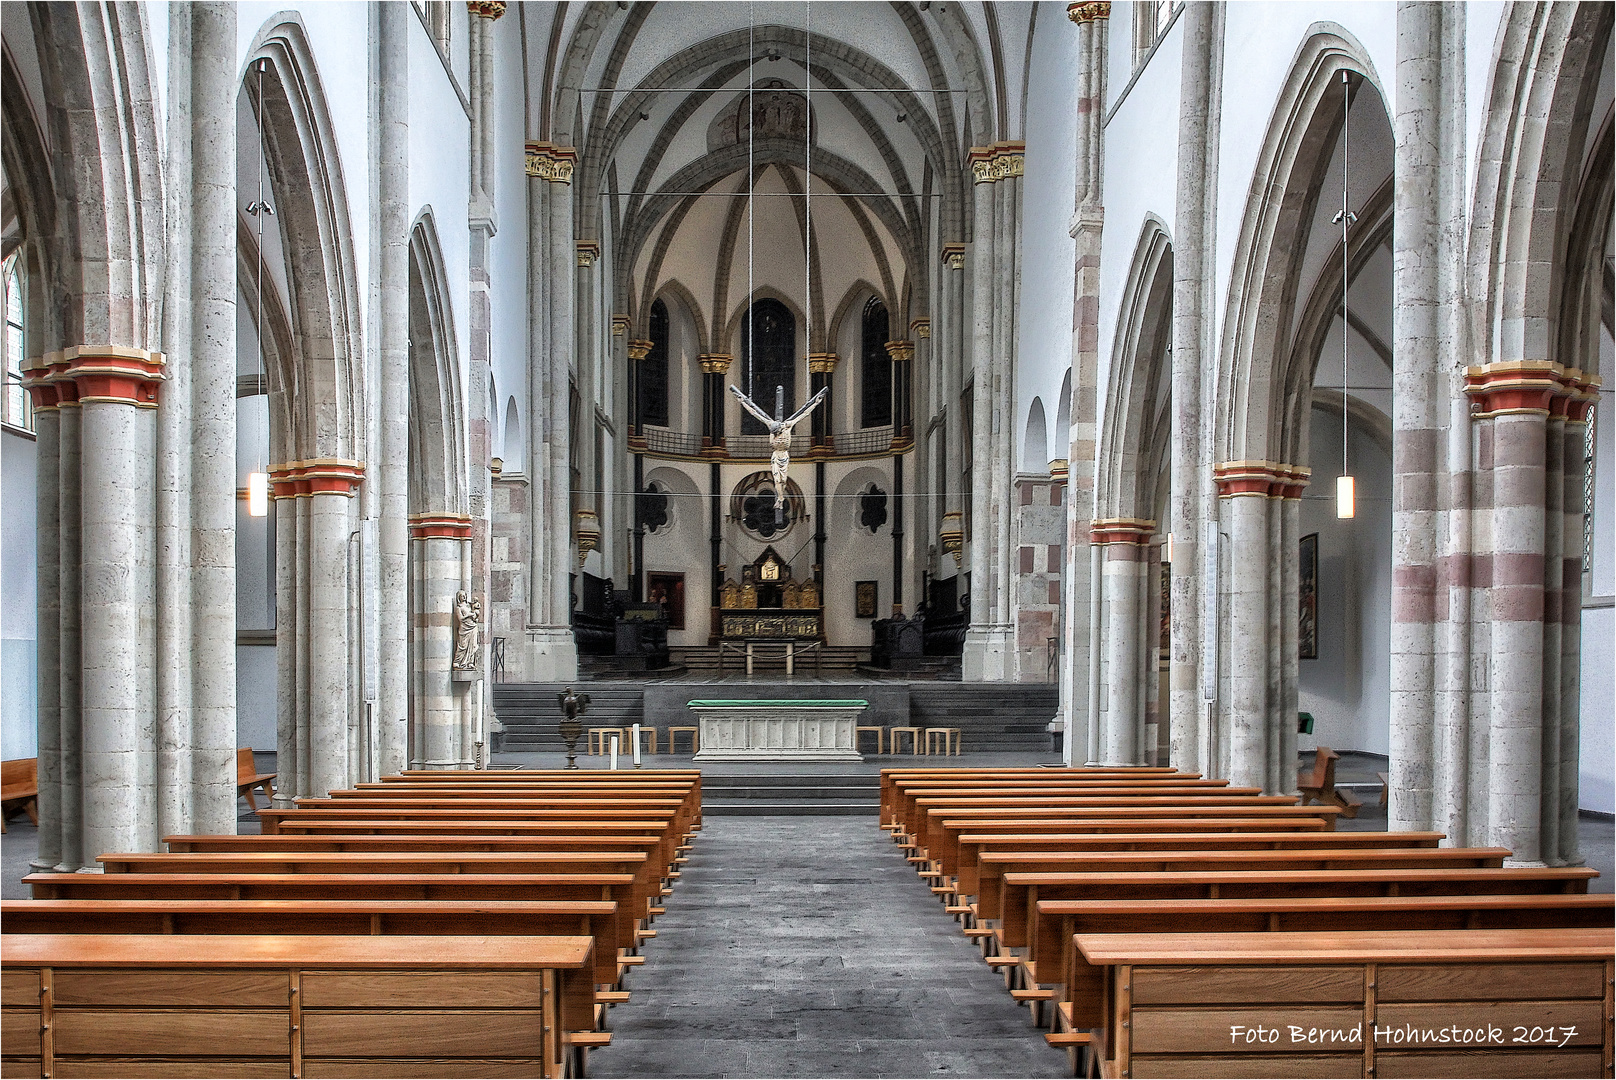 Pfarrkirche St. Severin ist eine der zwölf romanischen Basiliken Kölns